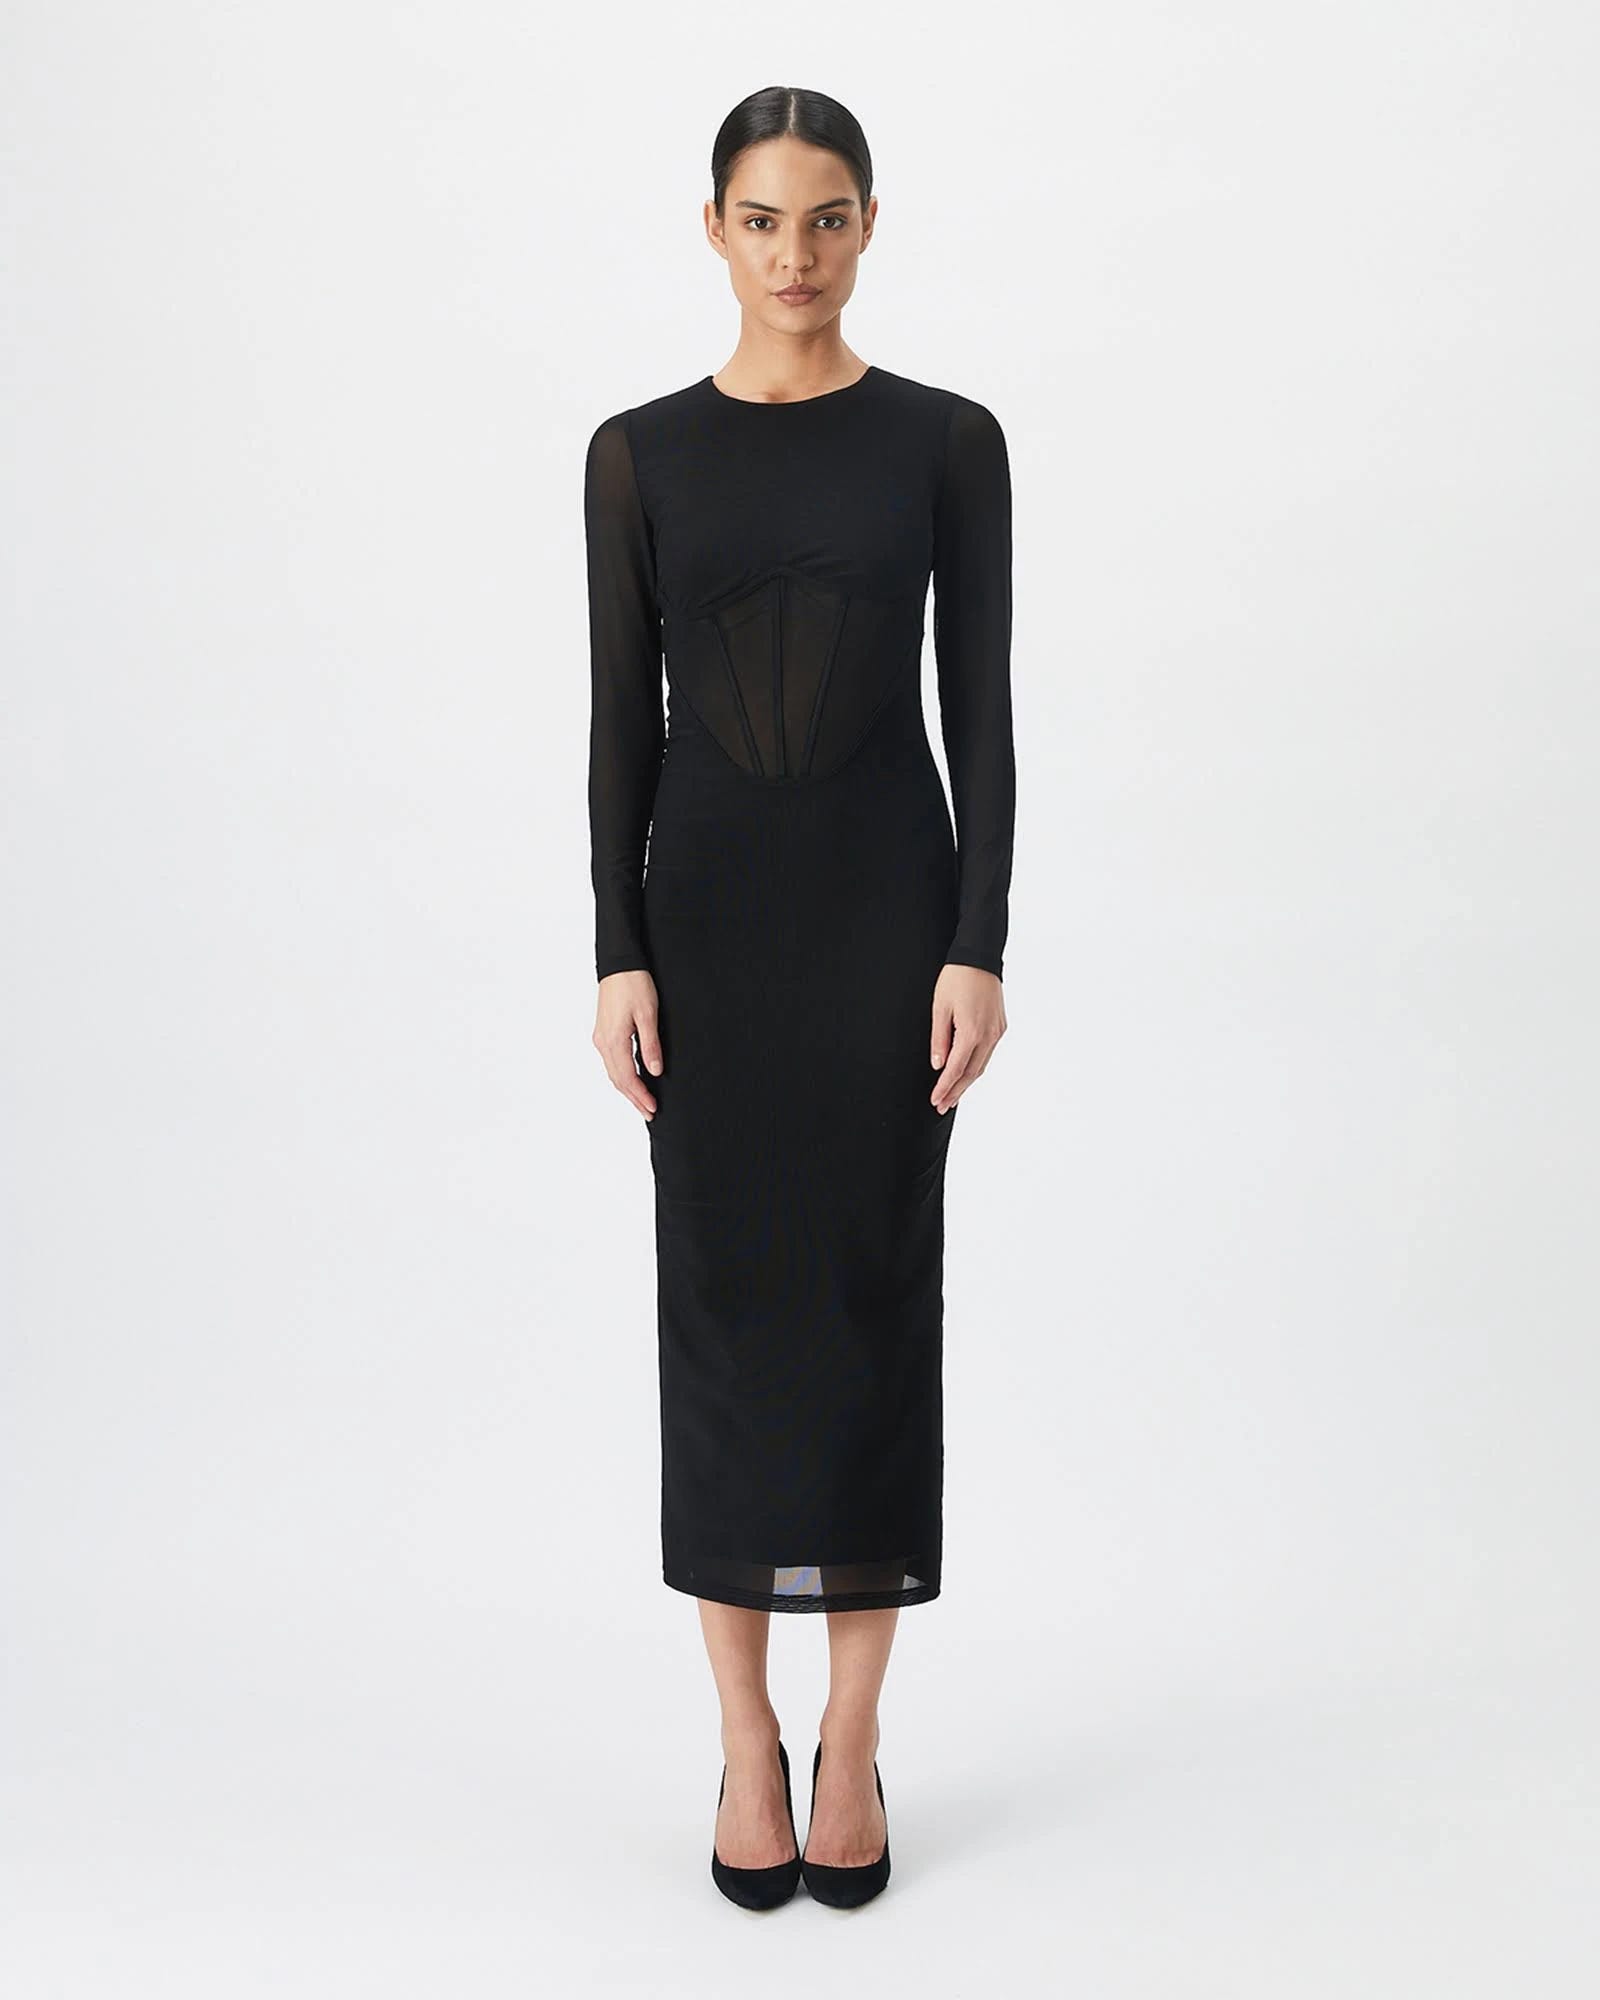 Corset-Bodied Midi Lace Dress by Bardot | Image